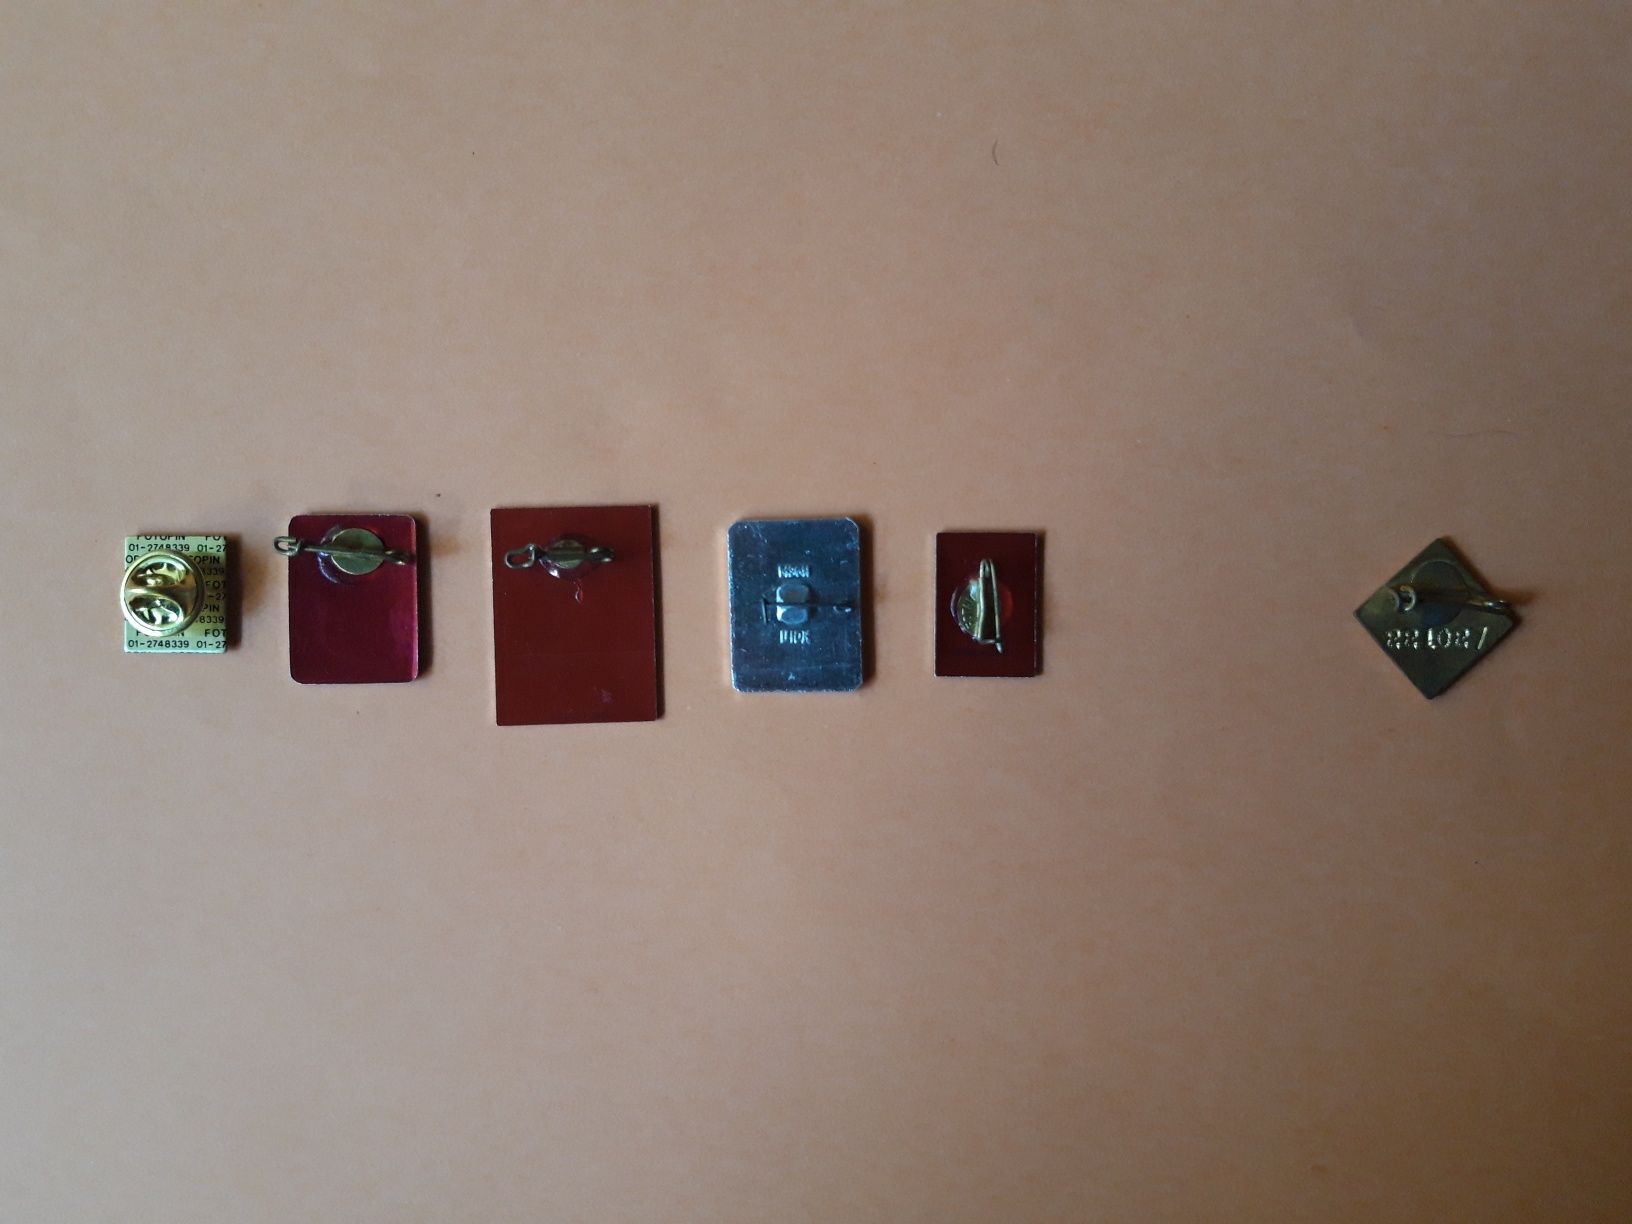 2 pins de colecção (PCP, Lenine e Intersindical)